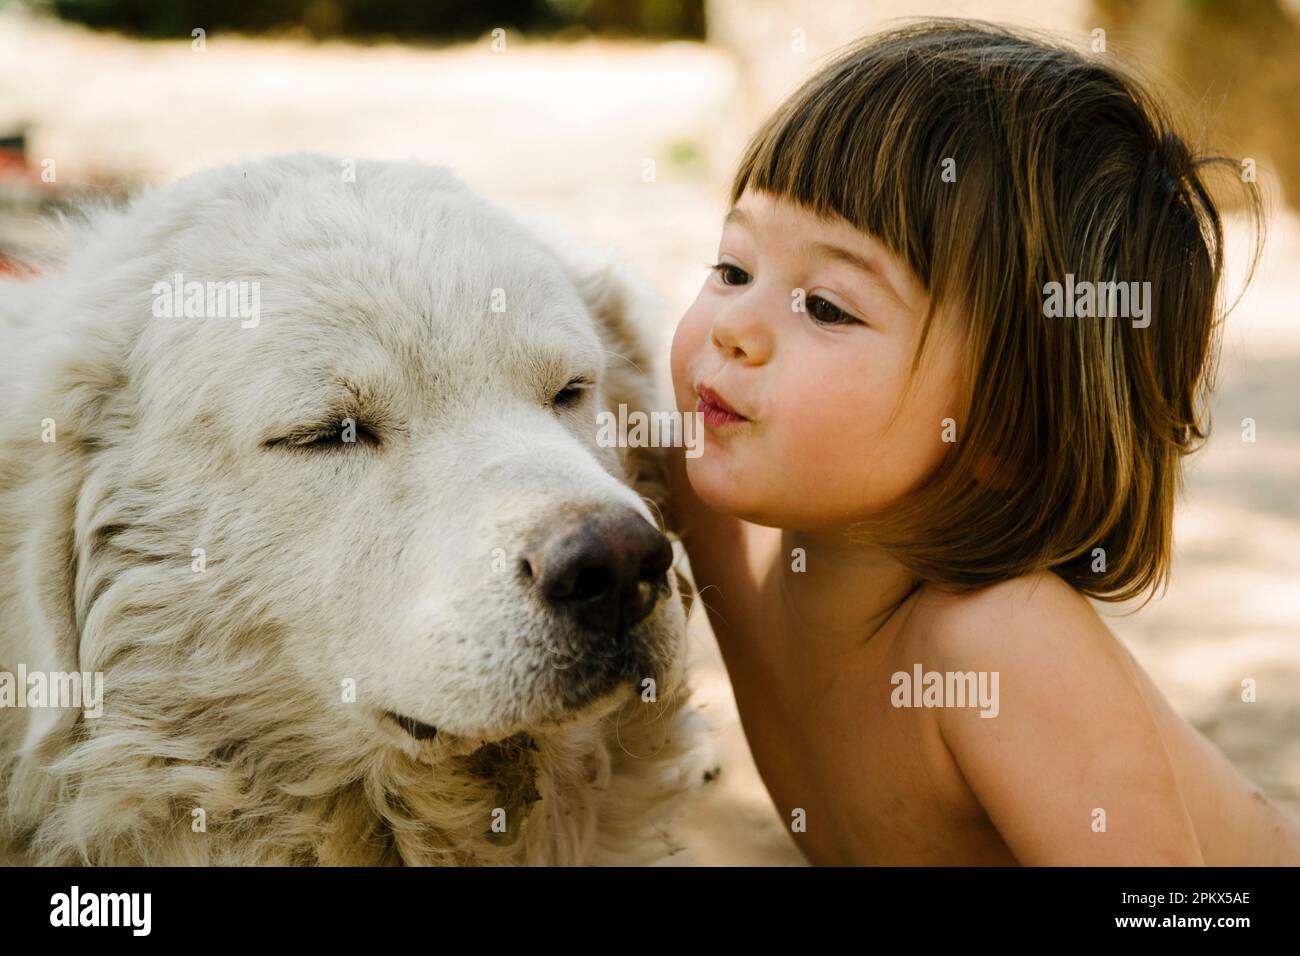 Un tout-petit adorable embrasse affectueusement le vieux chien blanc Banque D'Images